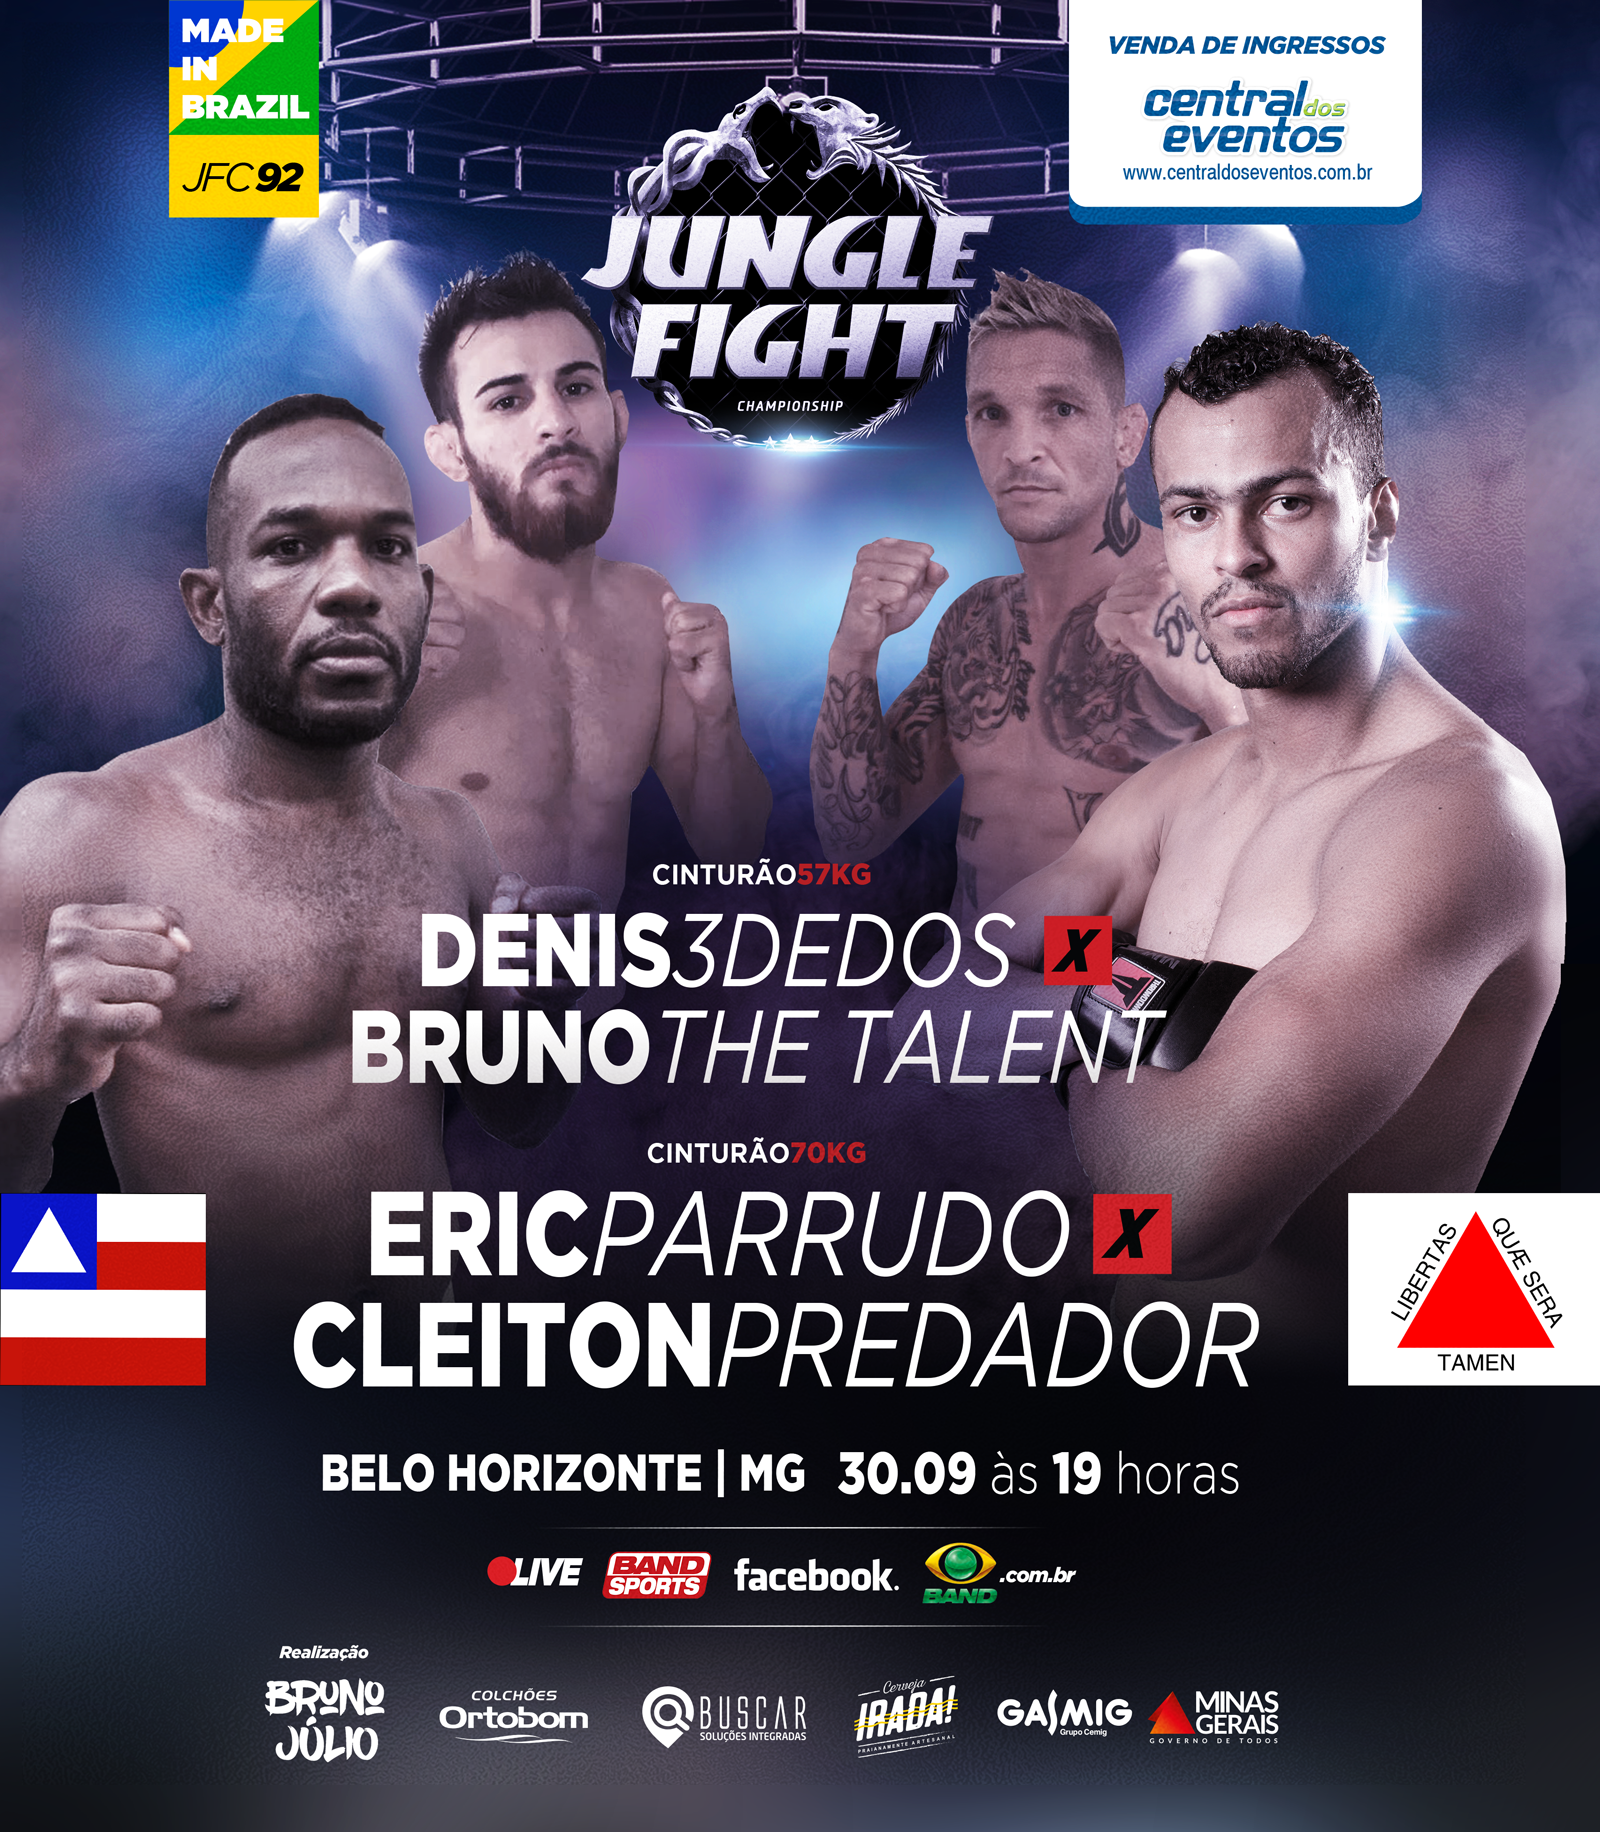 Jungle Fight 92 marca 14 anos de organização e leva três disputas de cinturões para Minas Gerais